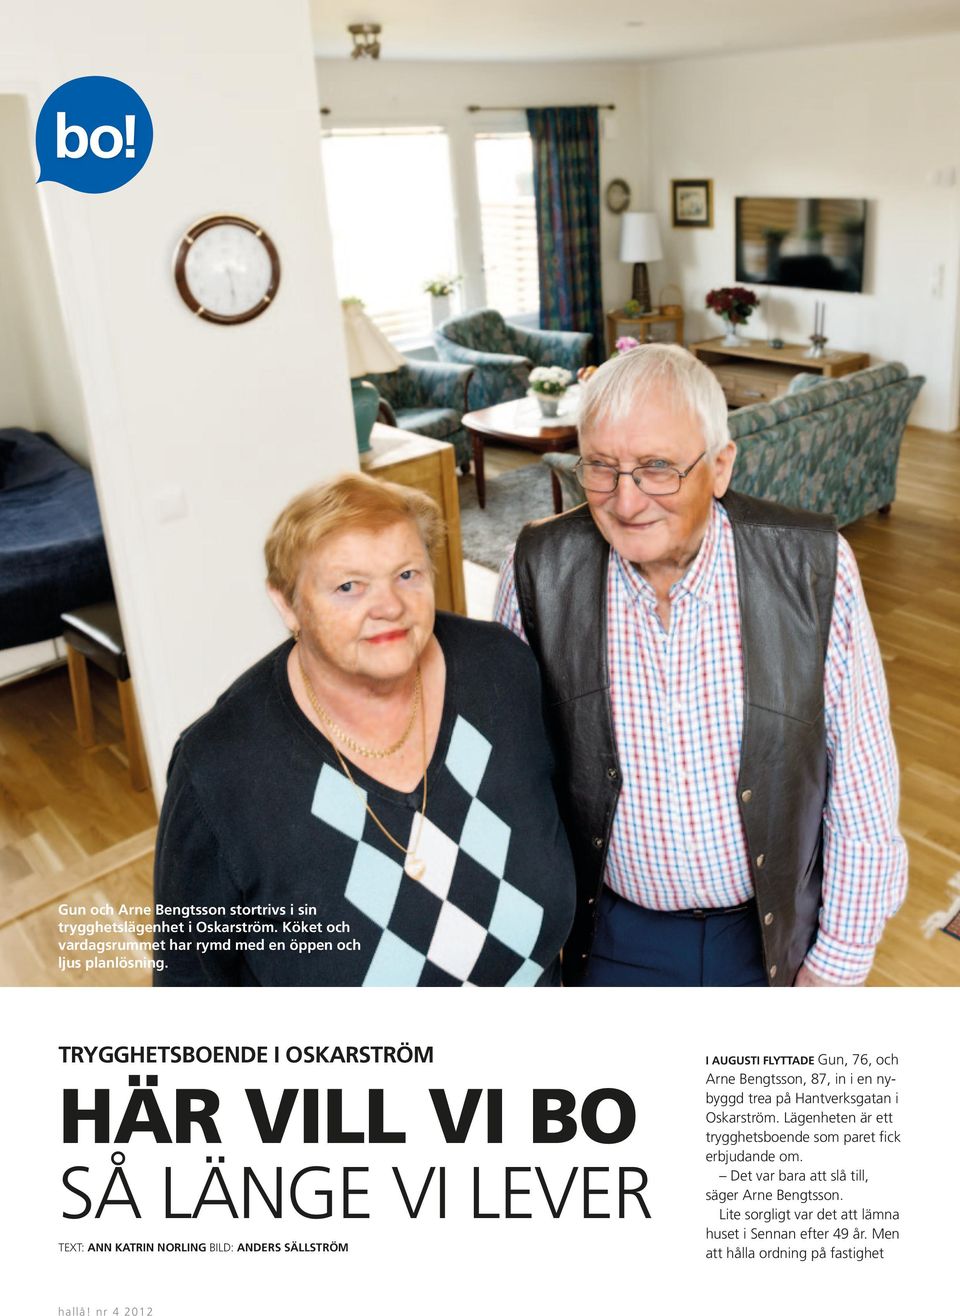 Arne Bengtsson, 87, in i en nybyggd trea på Hantverksgatan i Oskarström. Lägenheten är ett trygghetsboende som paret fick erbjudande om.